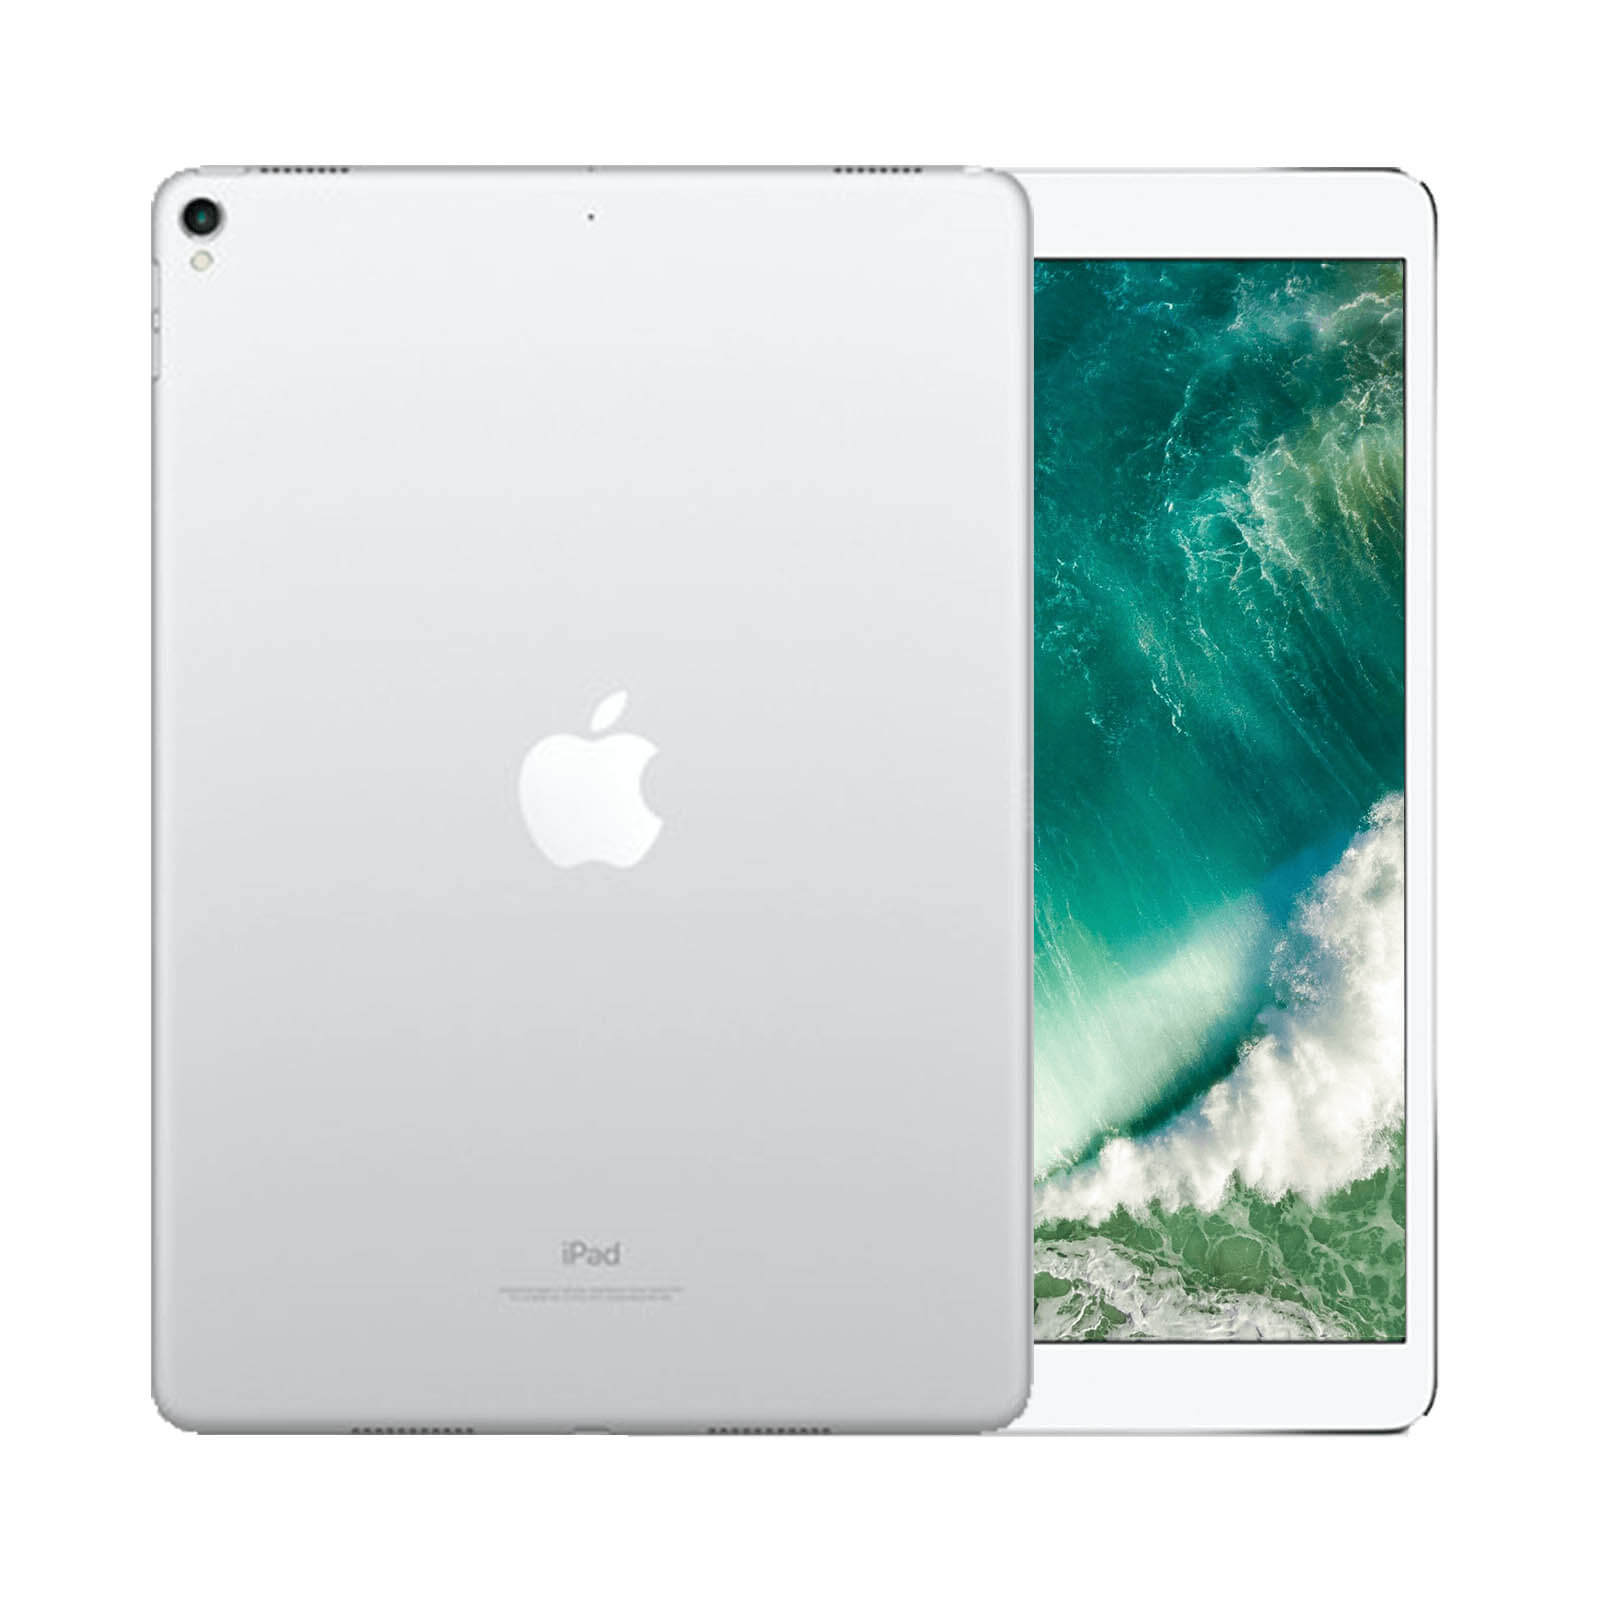 iPad Pro 11 Inch 512GB Silver Good - WiFi